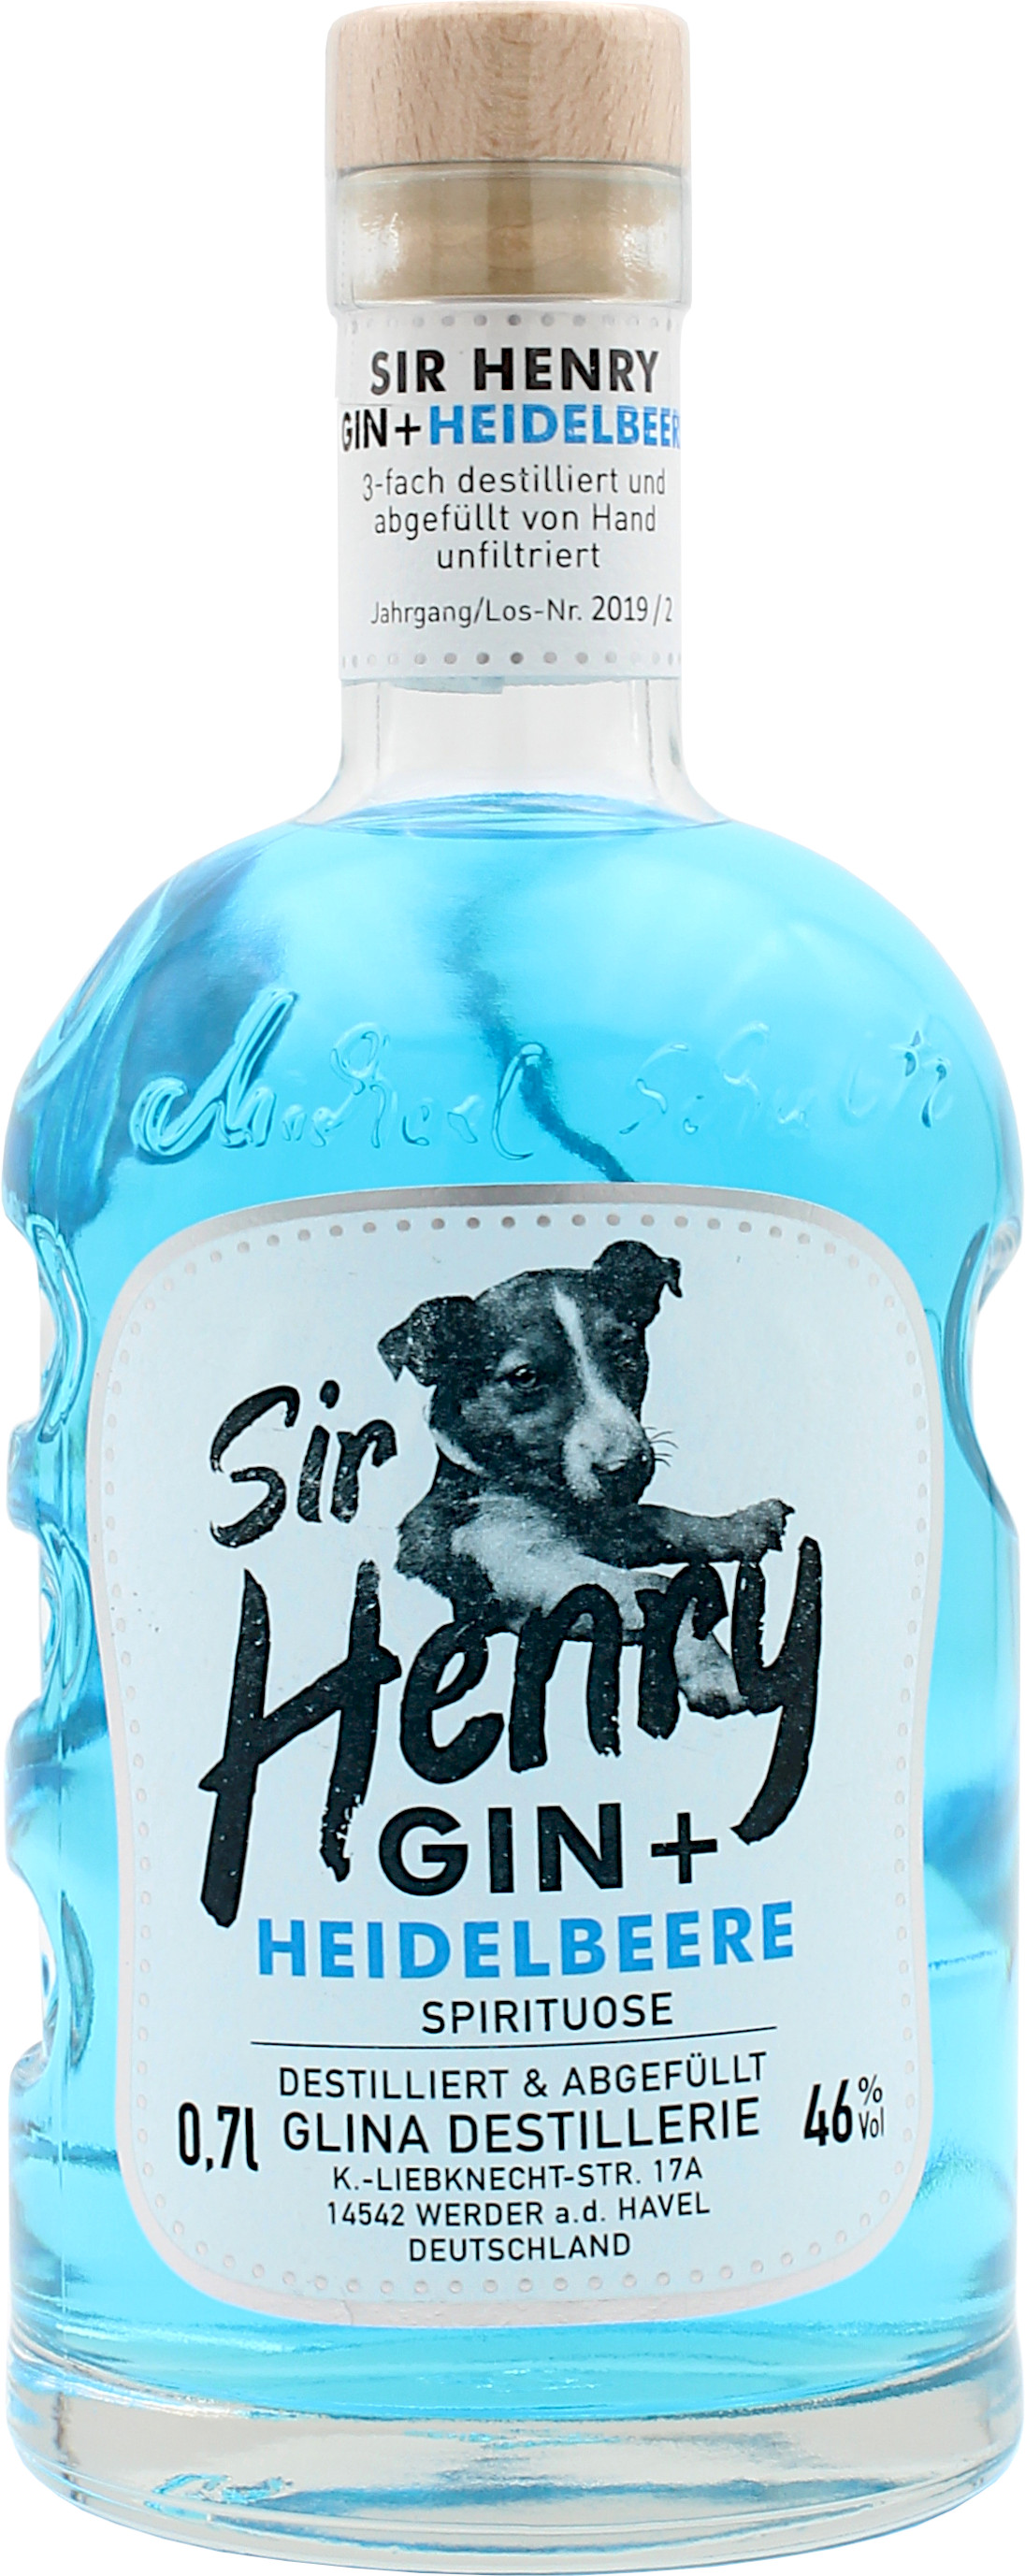 Sir Henry Gin mit Heidelbeere 46.0% 0,7l